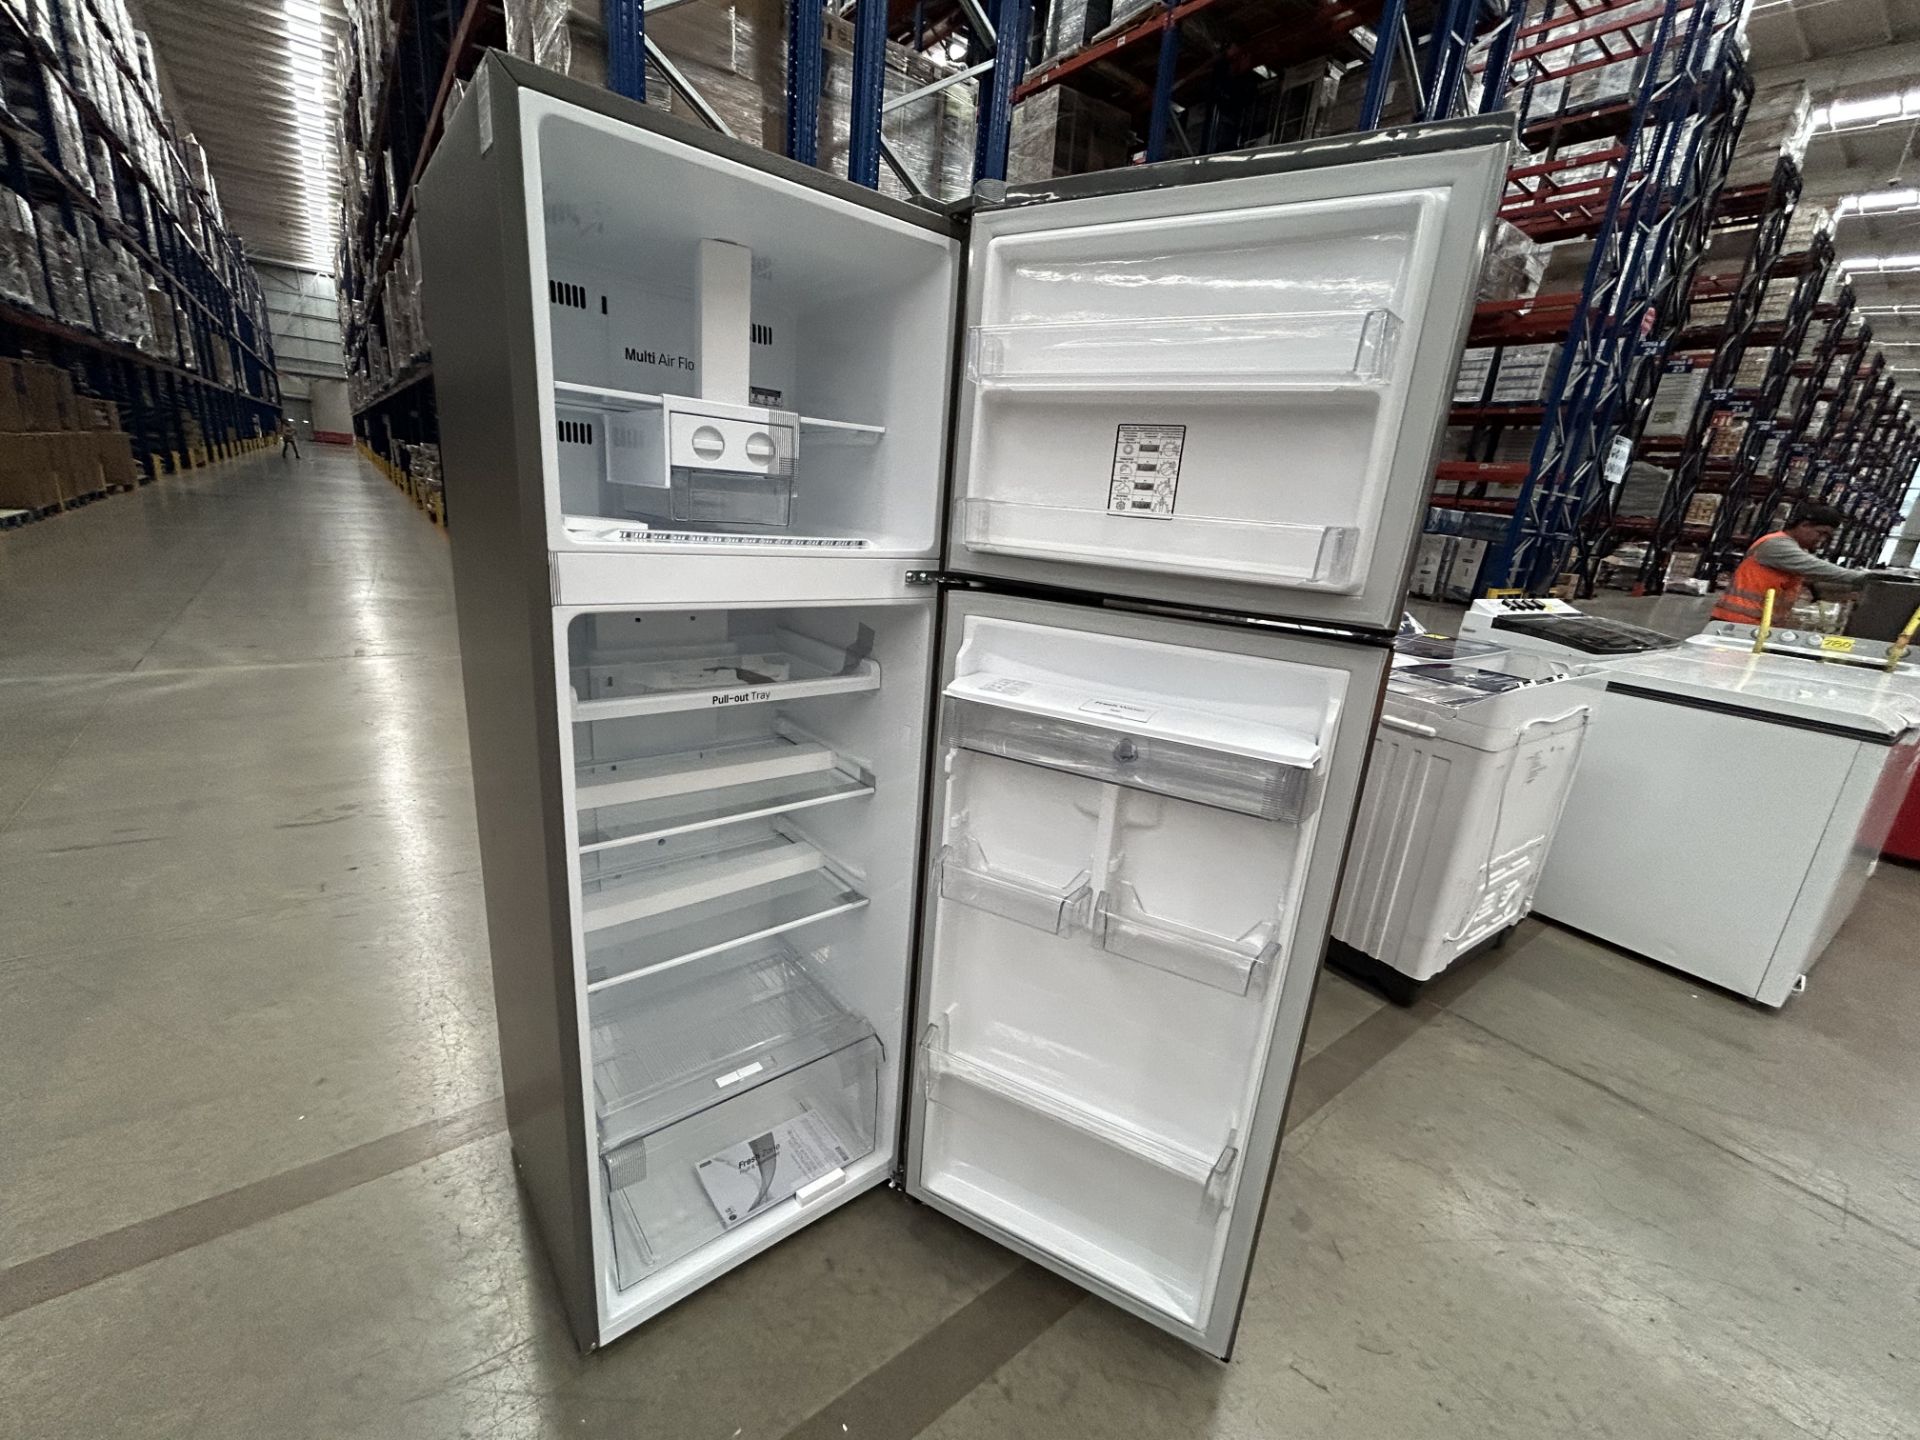 Lote de 2 refrigeradores contiene: 1 Refrigerador con dispensador de agua Marca LG, Modelo GT32WDC, - Image 5 of 6